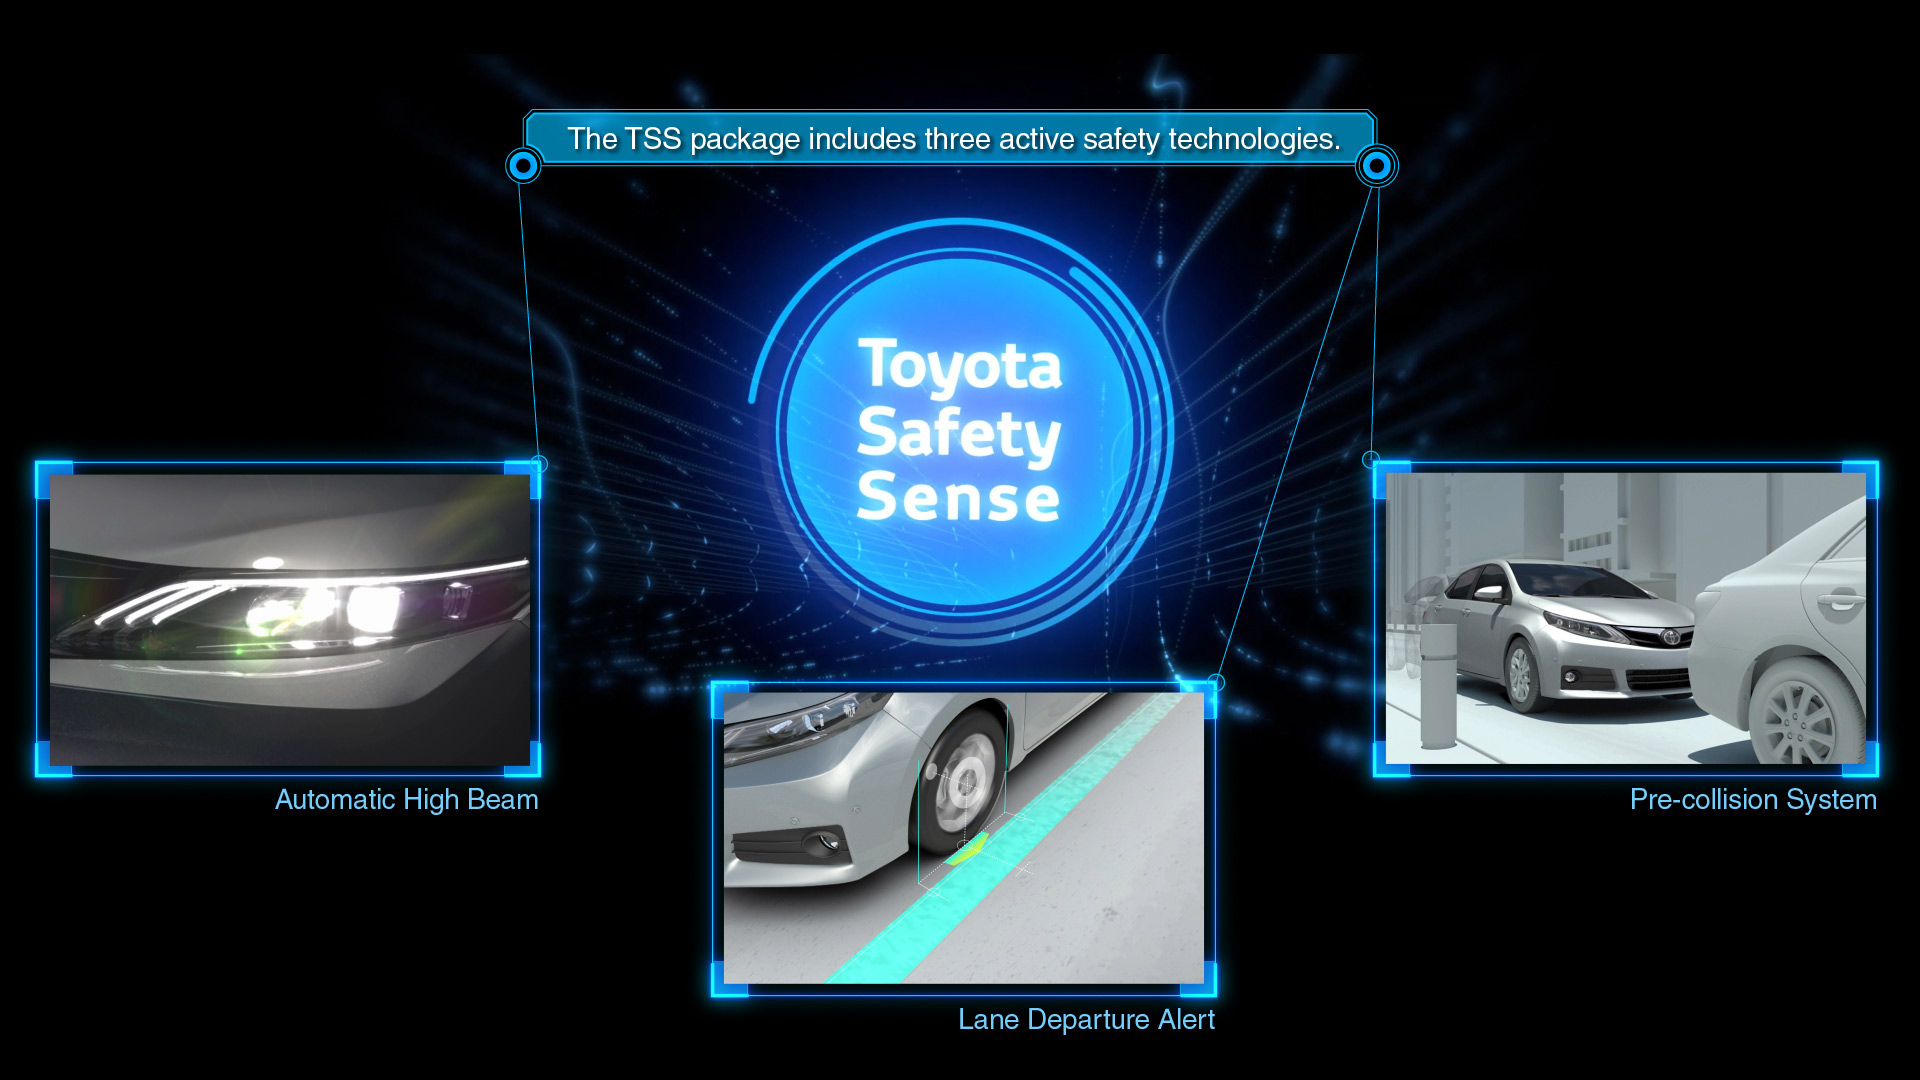 Toyota Safety Sense